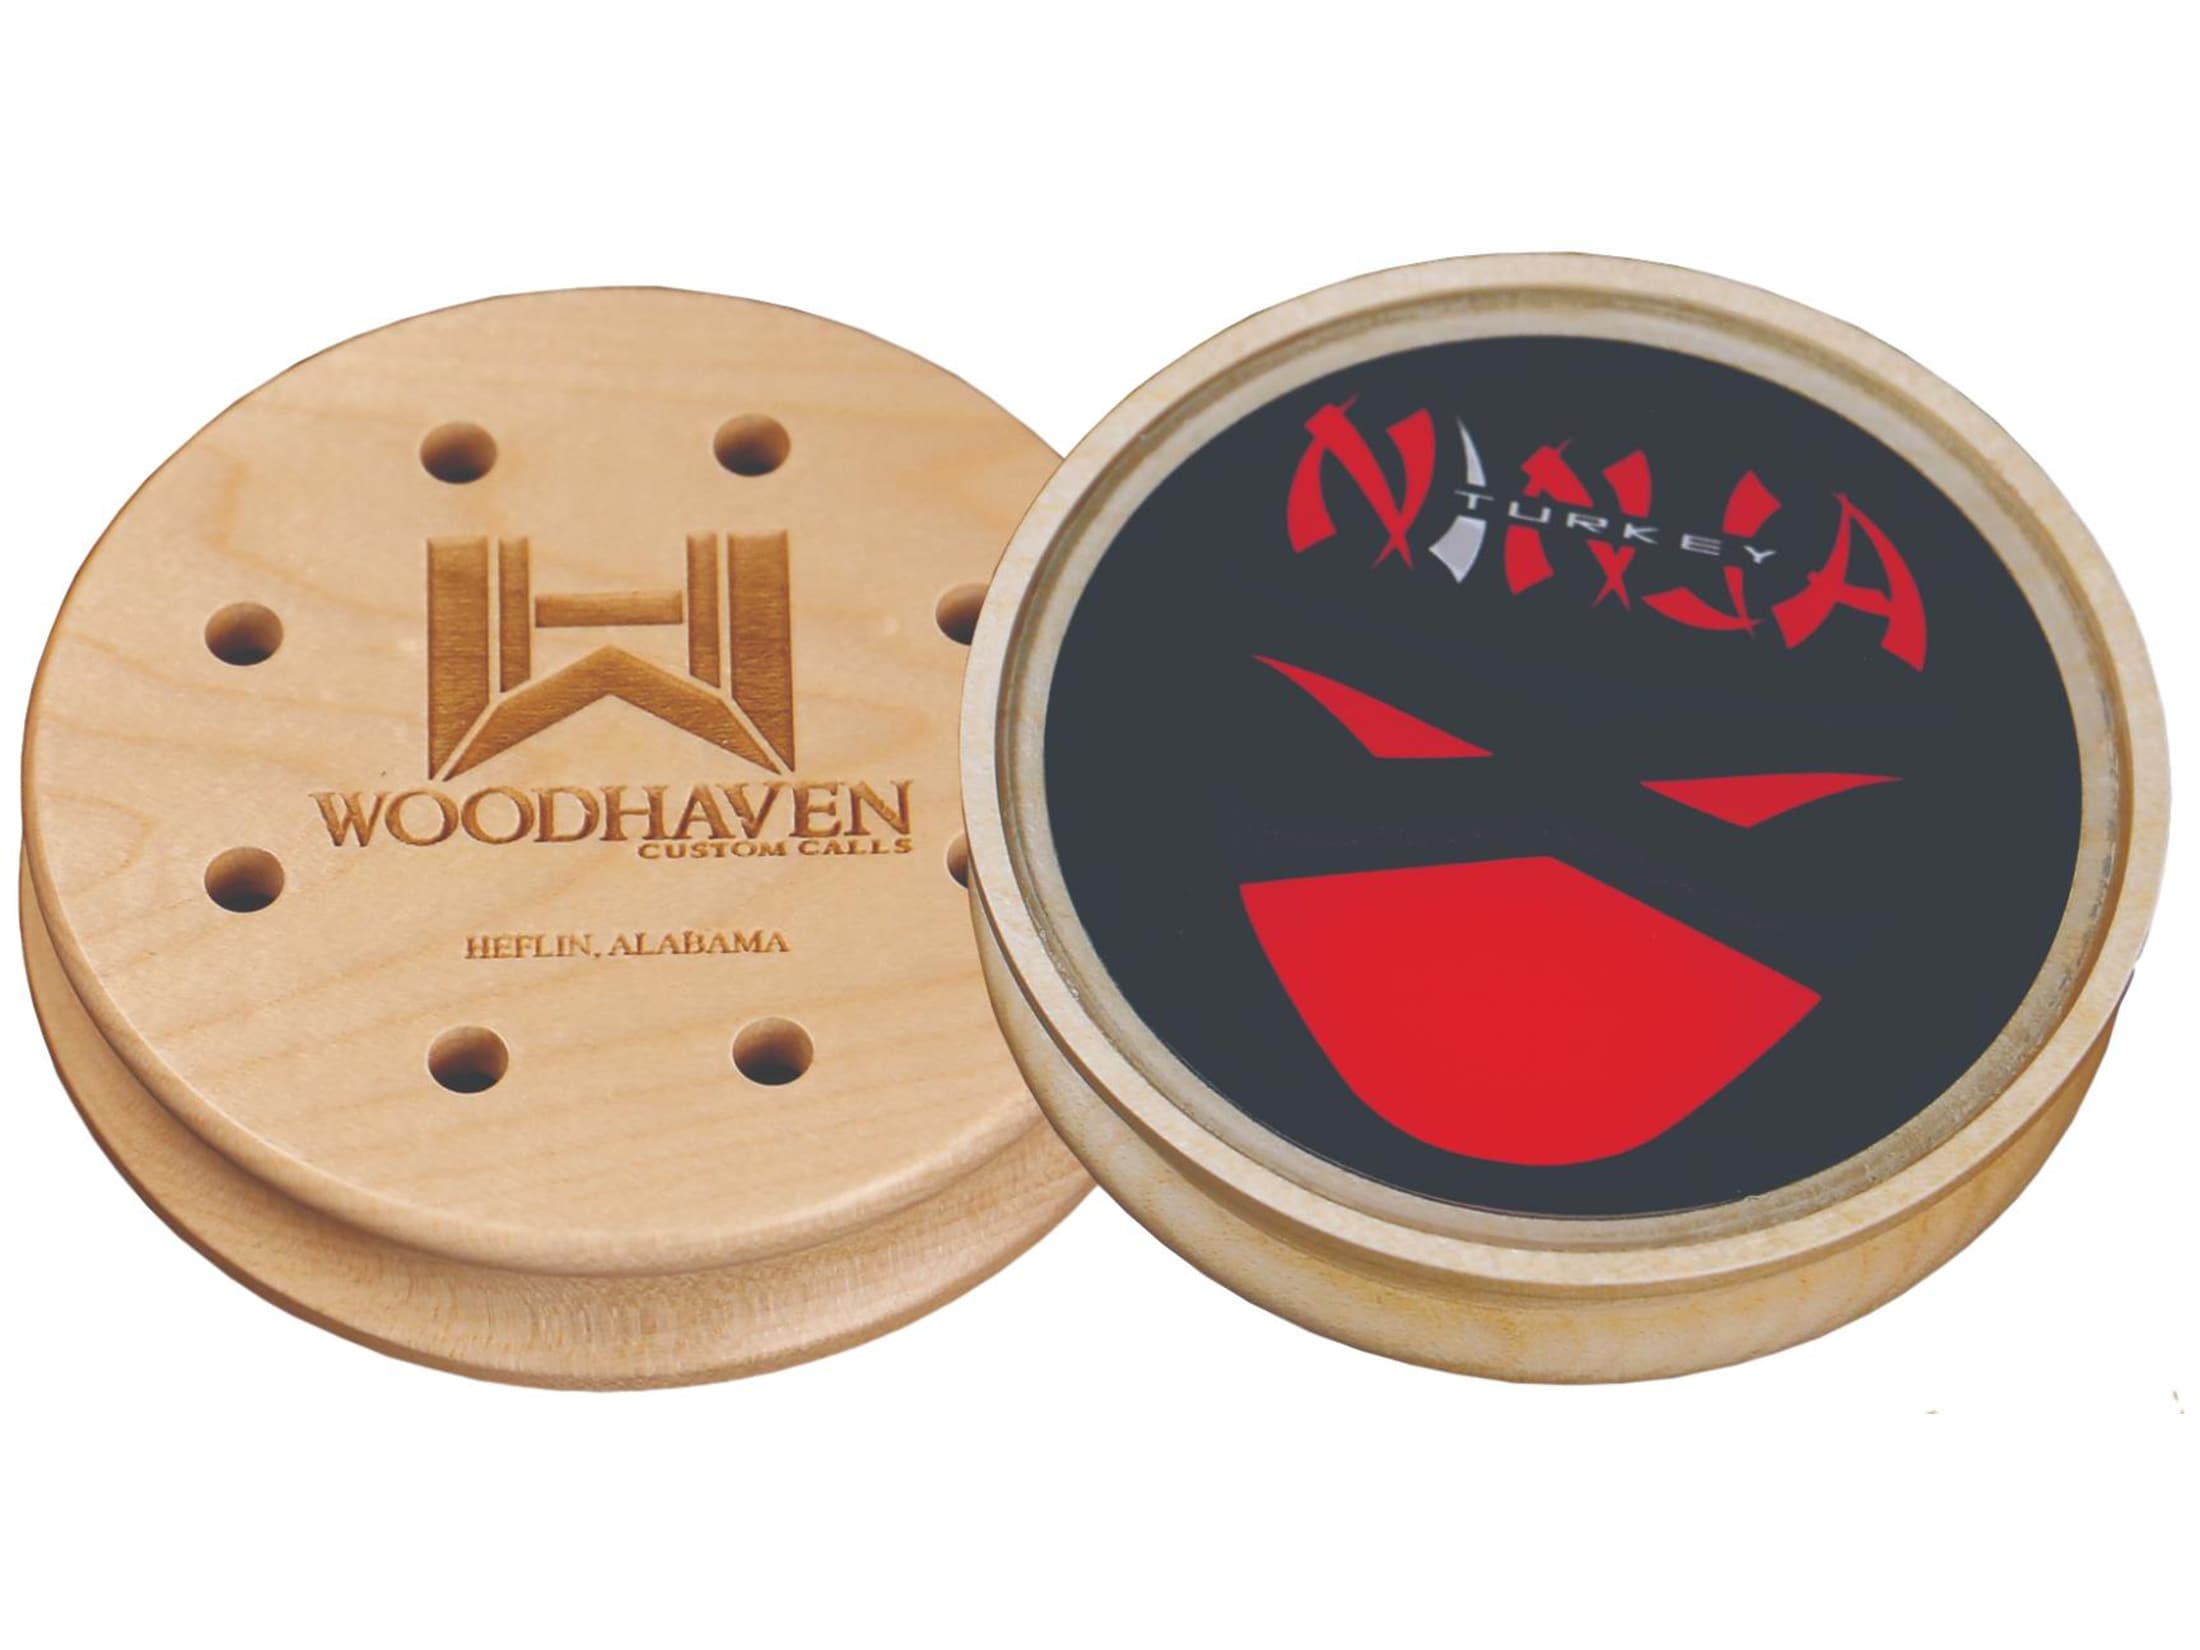 Woodhaven Red Ninja Glass Turkey Call